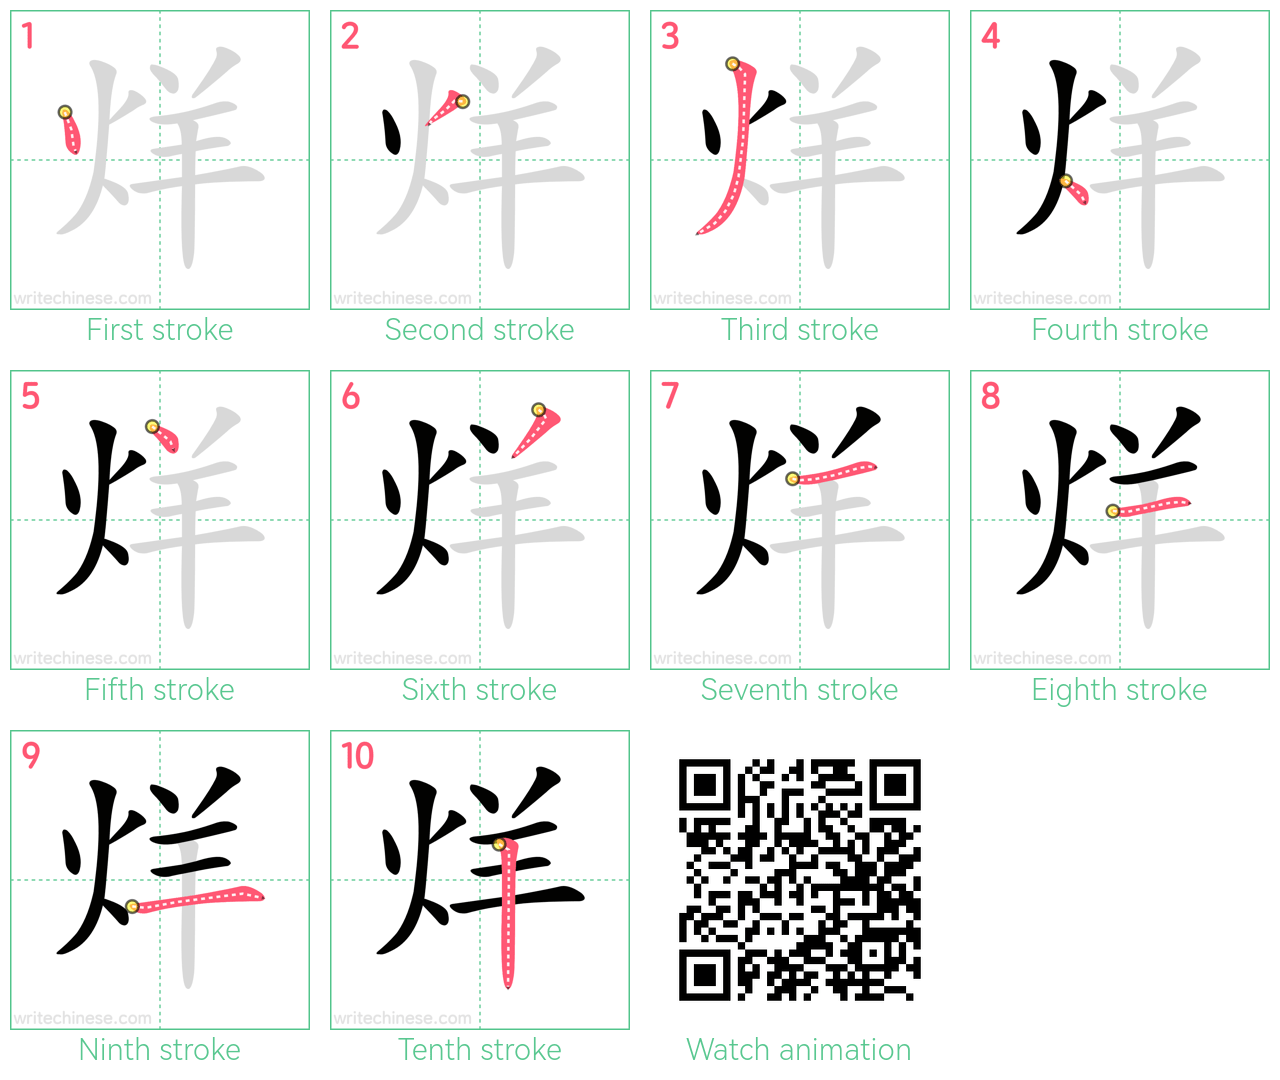 烊 step-by-step stroke order diagrams